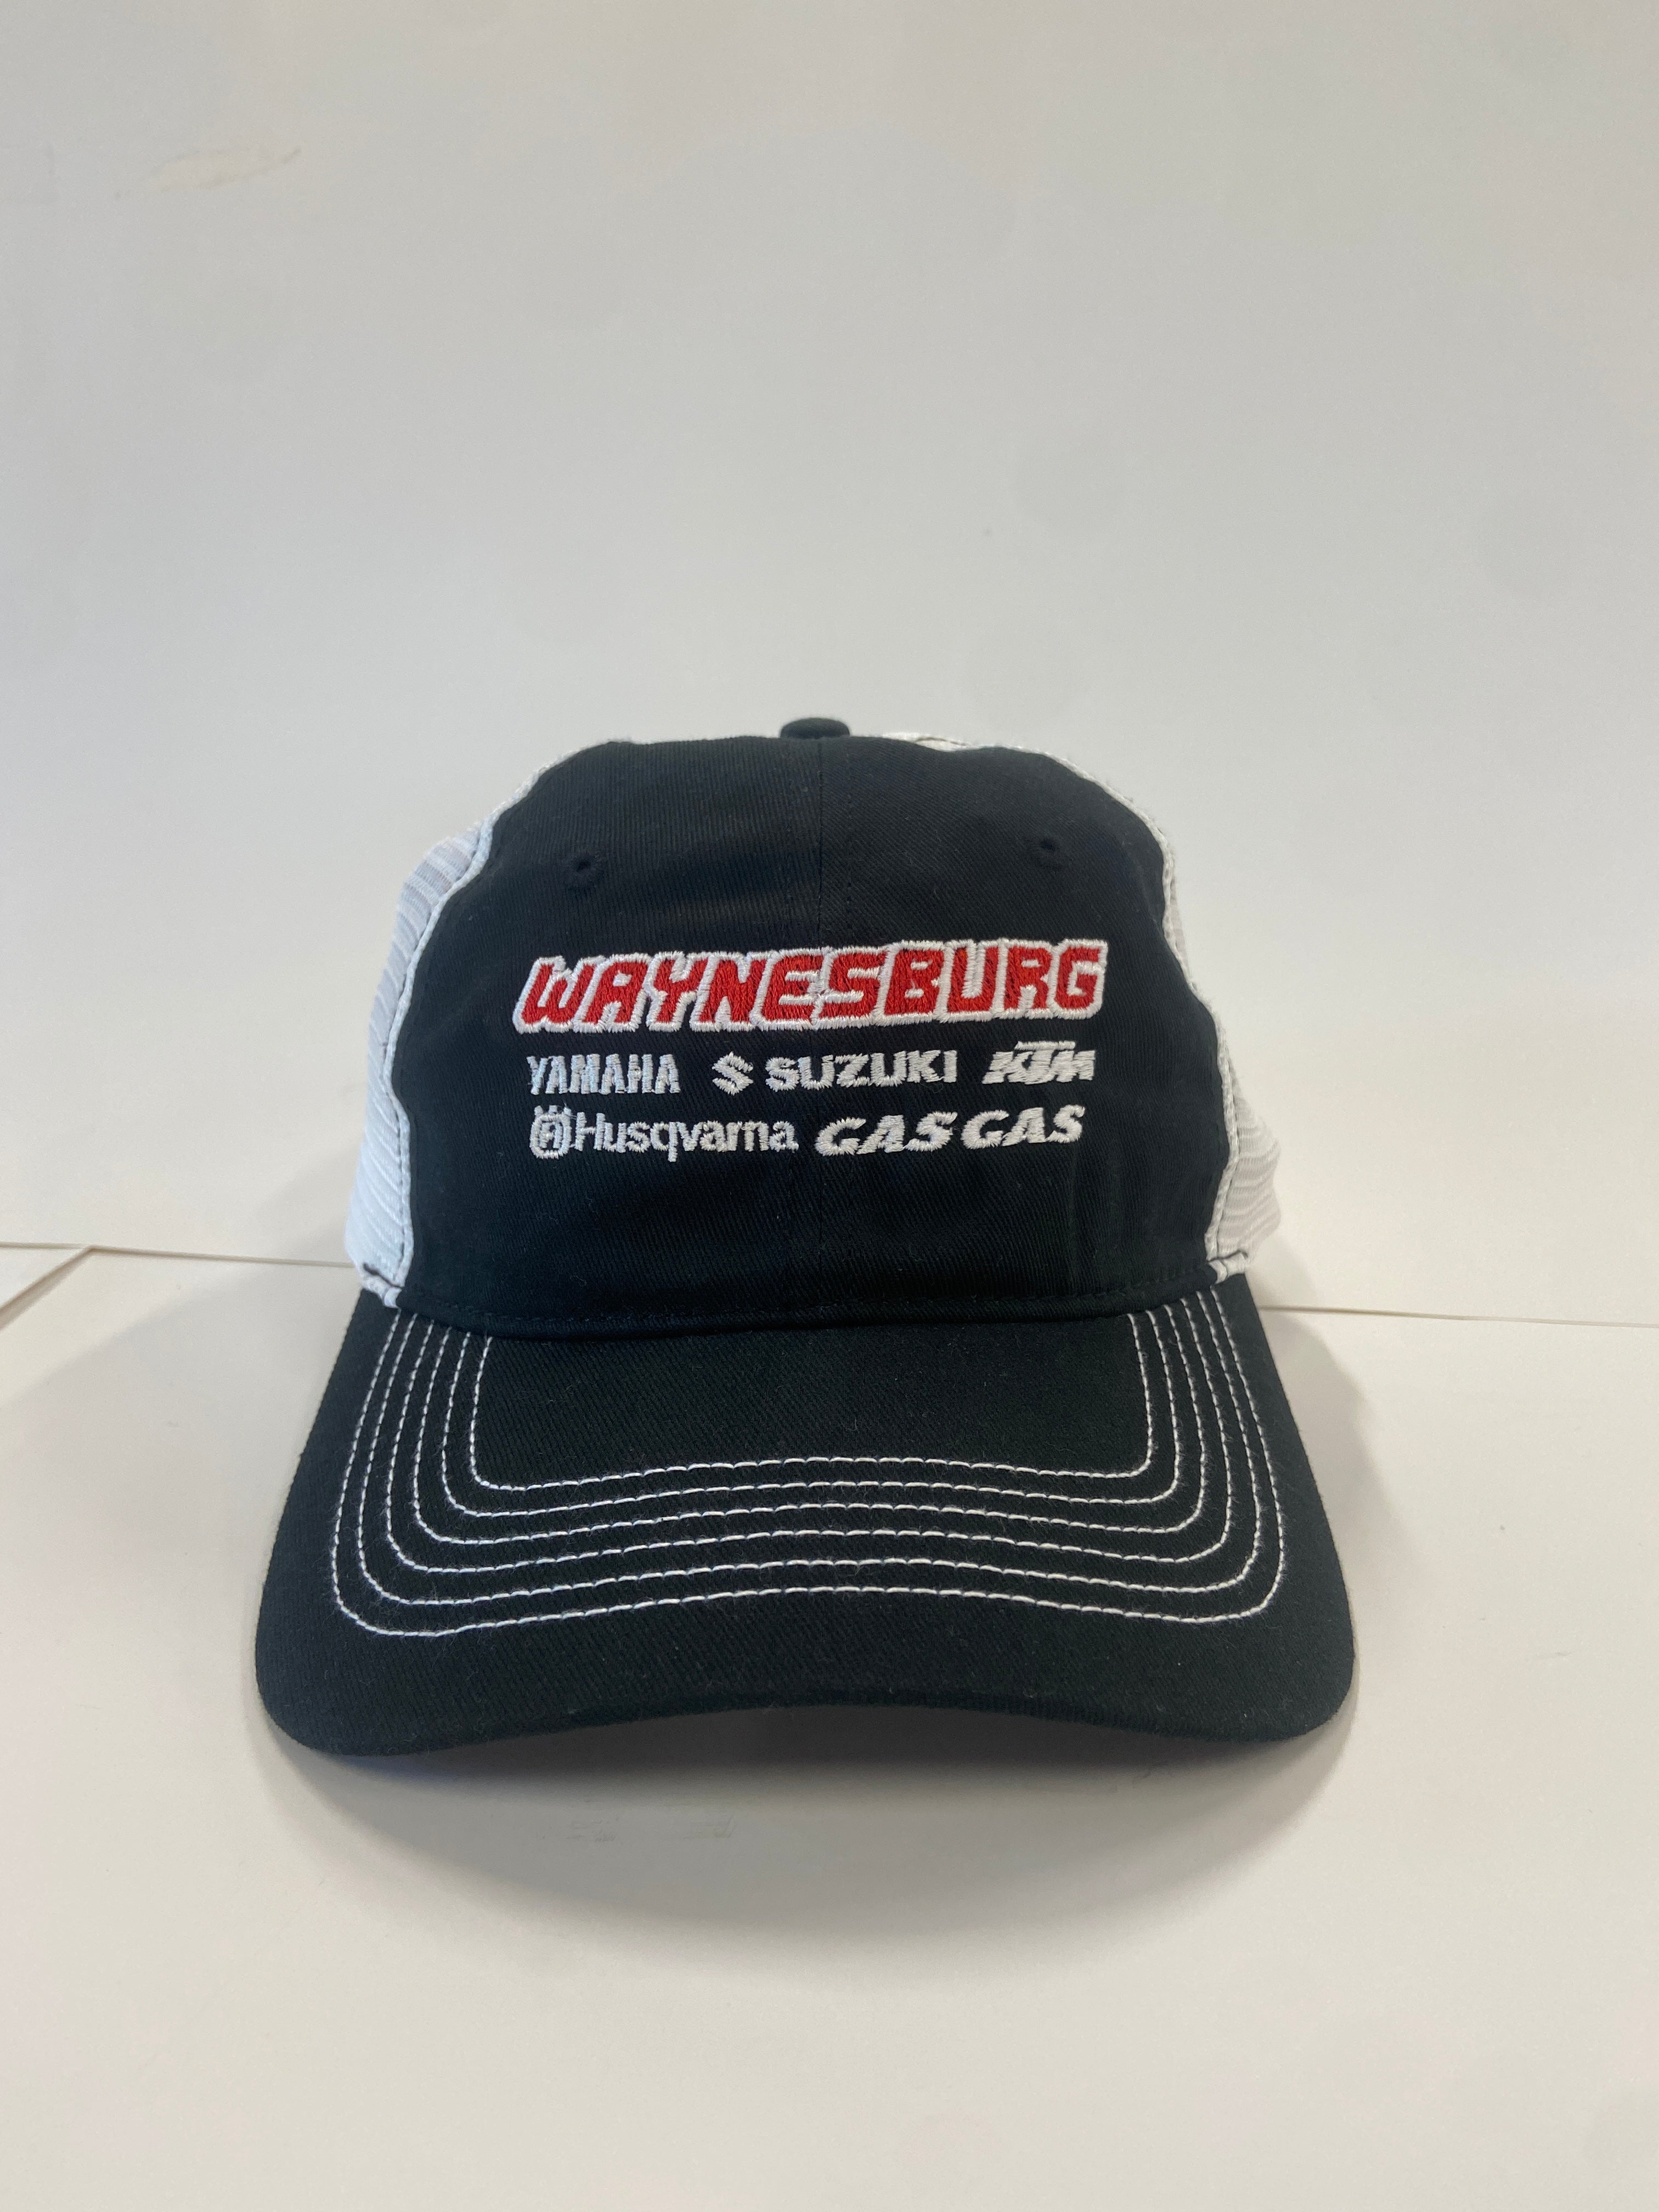 Waynesburg Yamaha Adjustable Shop Hat